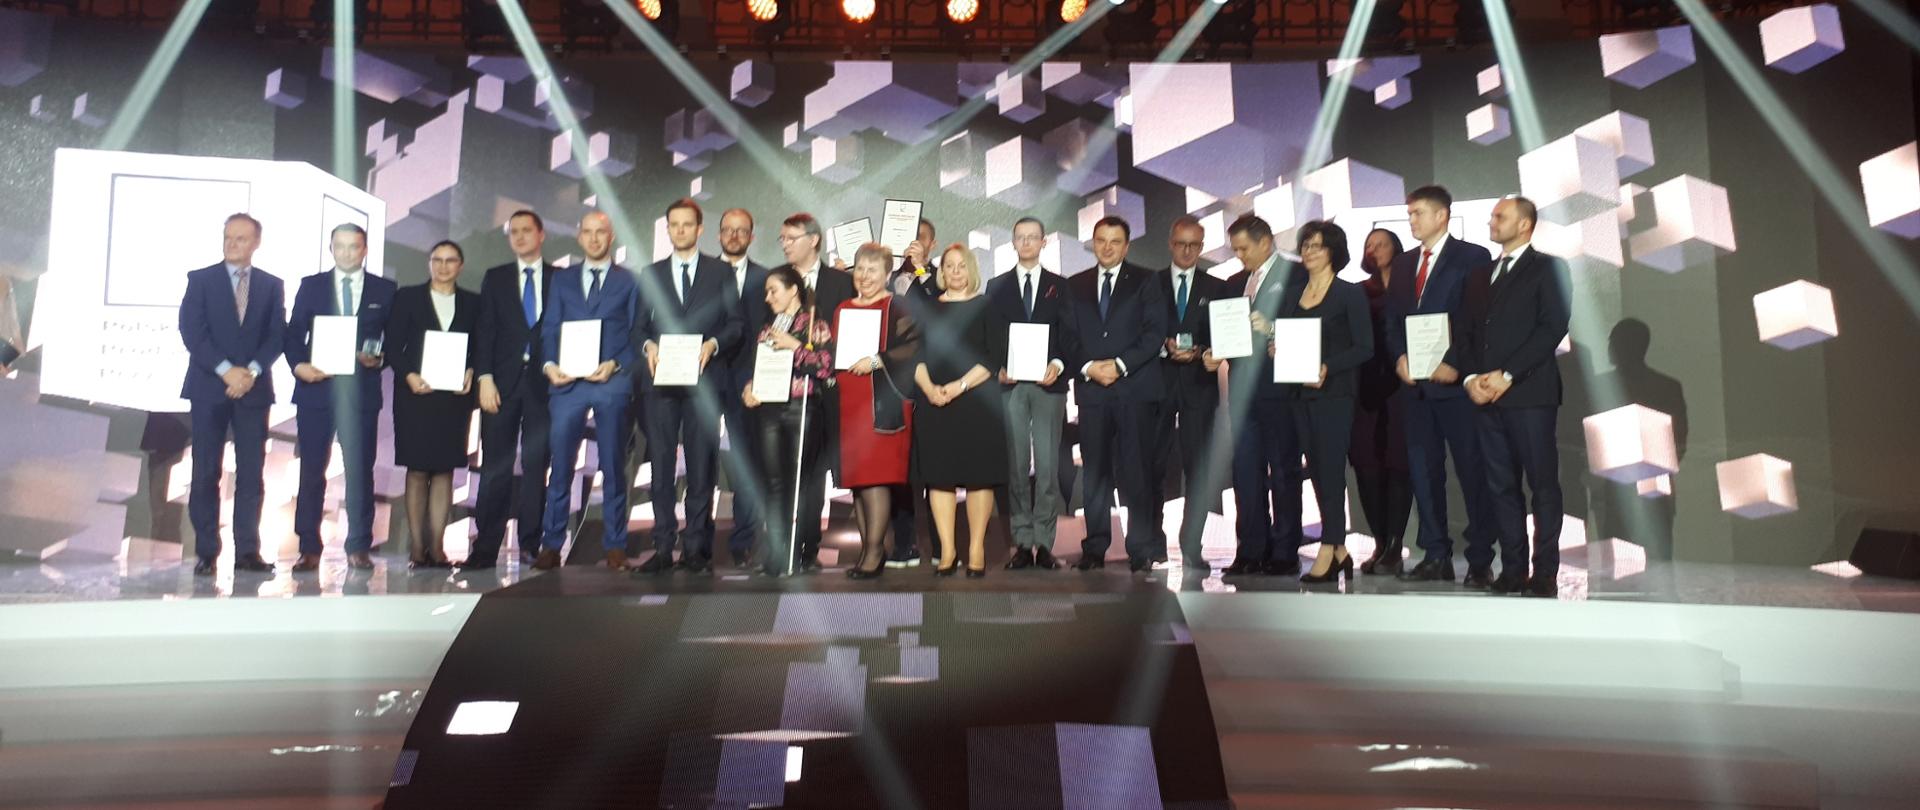 Na zdjęciu widać laureatów konkursu Polski Produkt Przyszłości.